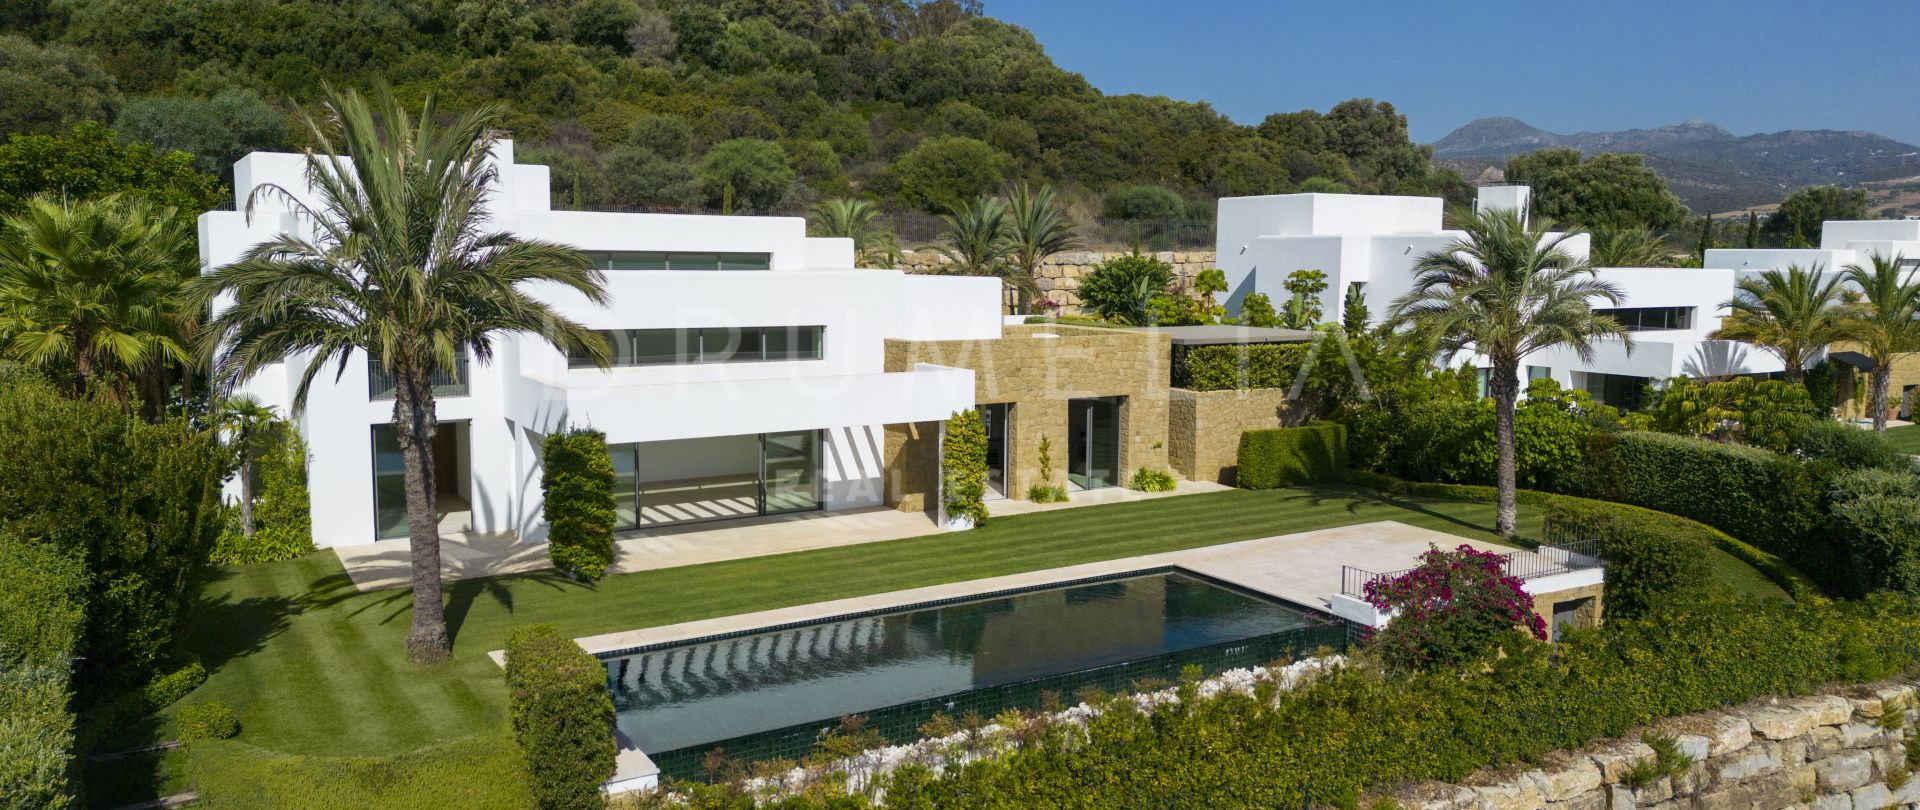 Helt ny lyxvilla i frontlinjen för golf med fantastisk utsikt och charm i Ibiza-stil, Finca Cortesin, Casares.